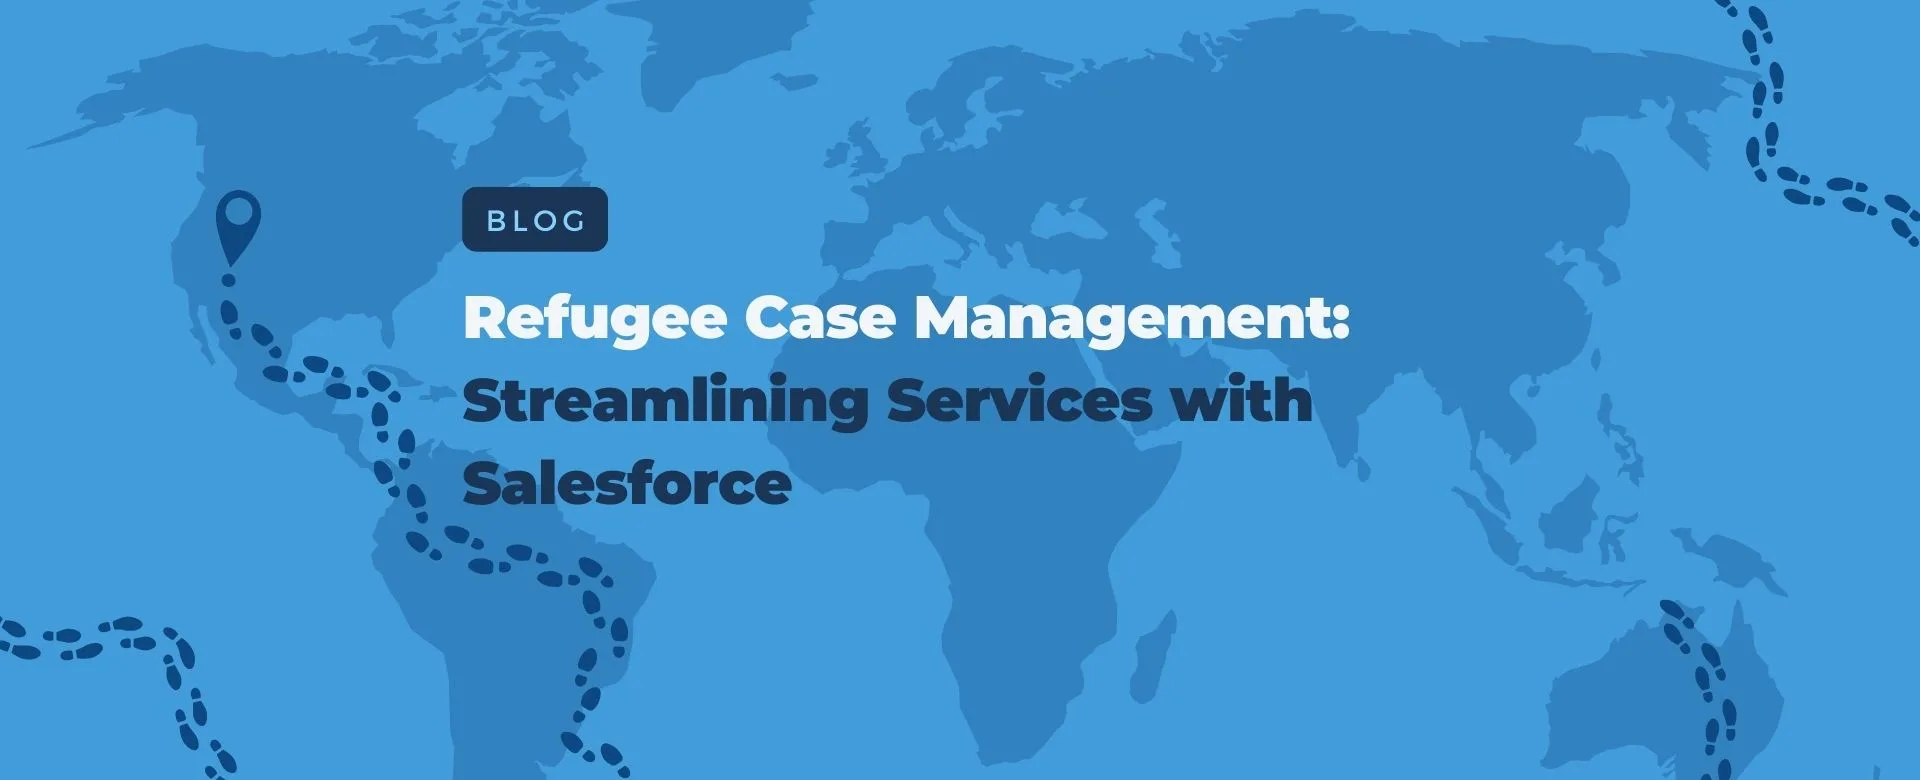 Refugee Case Management